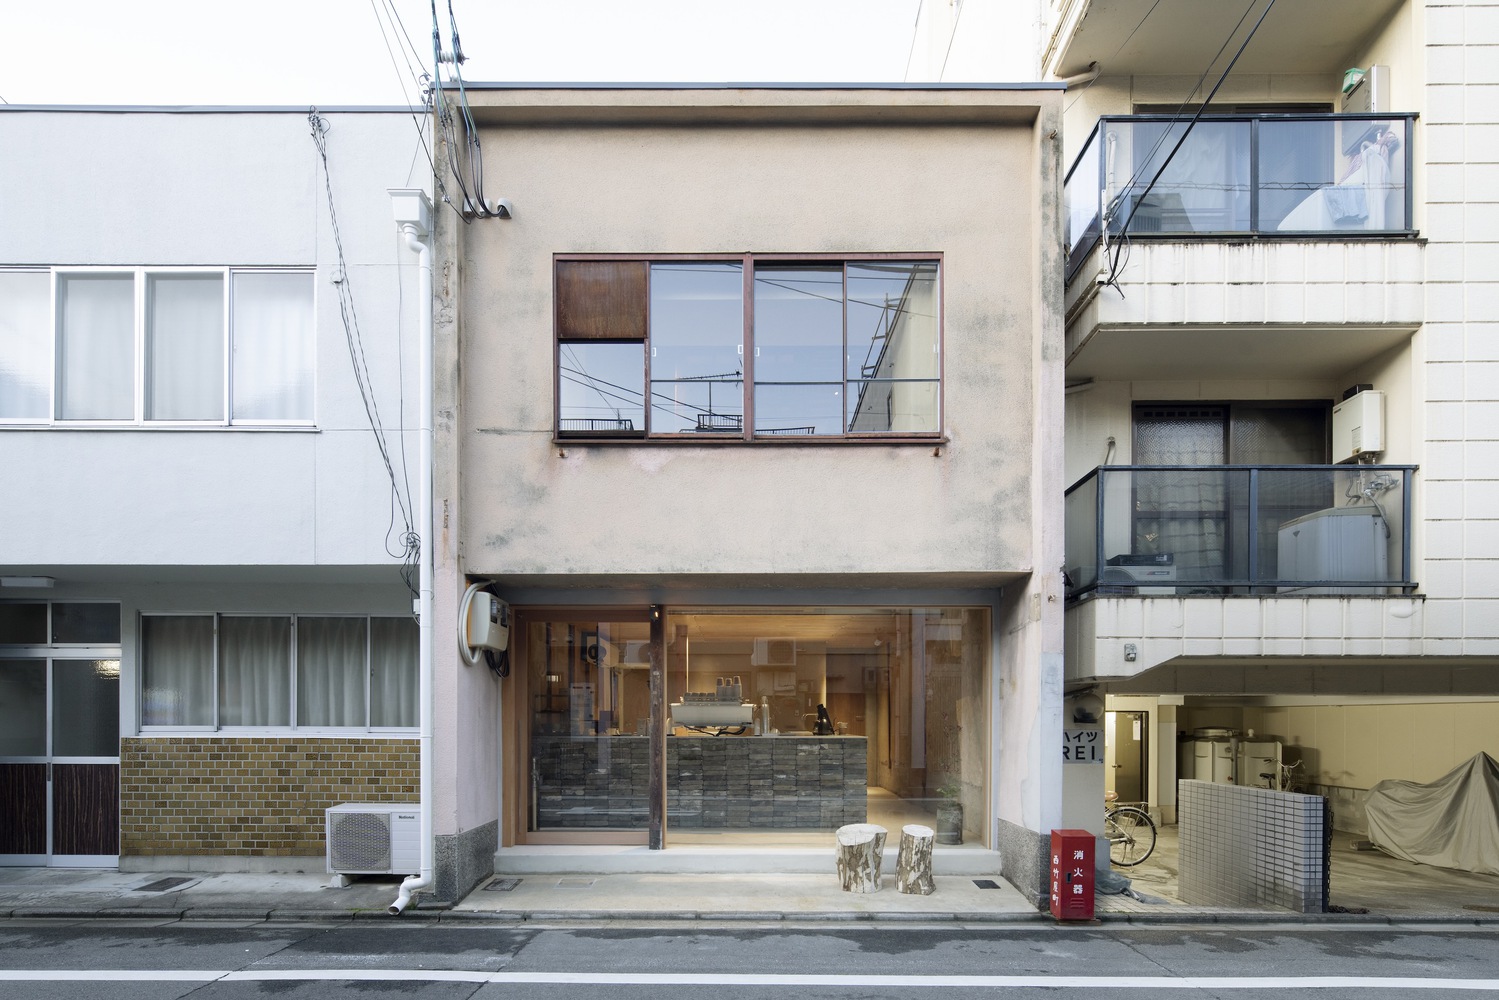 日本,京都,咖啡廳設計案例,Hoo. Café,甜甜圈店,62㎡,咖啡廳設計,Koyori,咖啡店設計,町屋改造